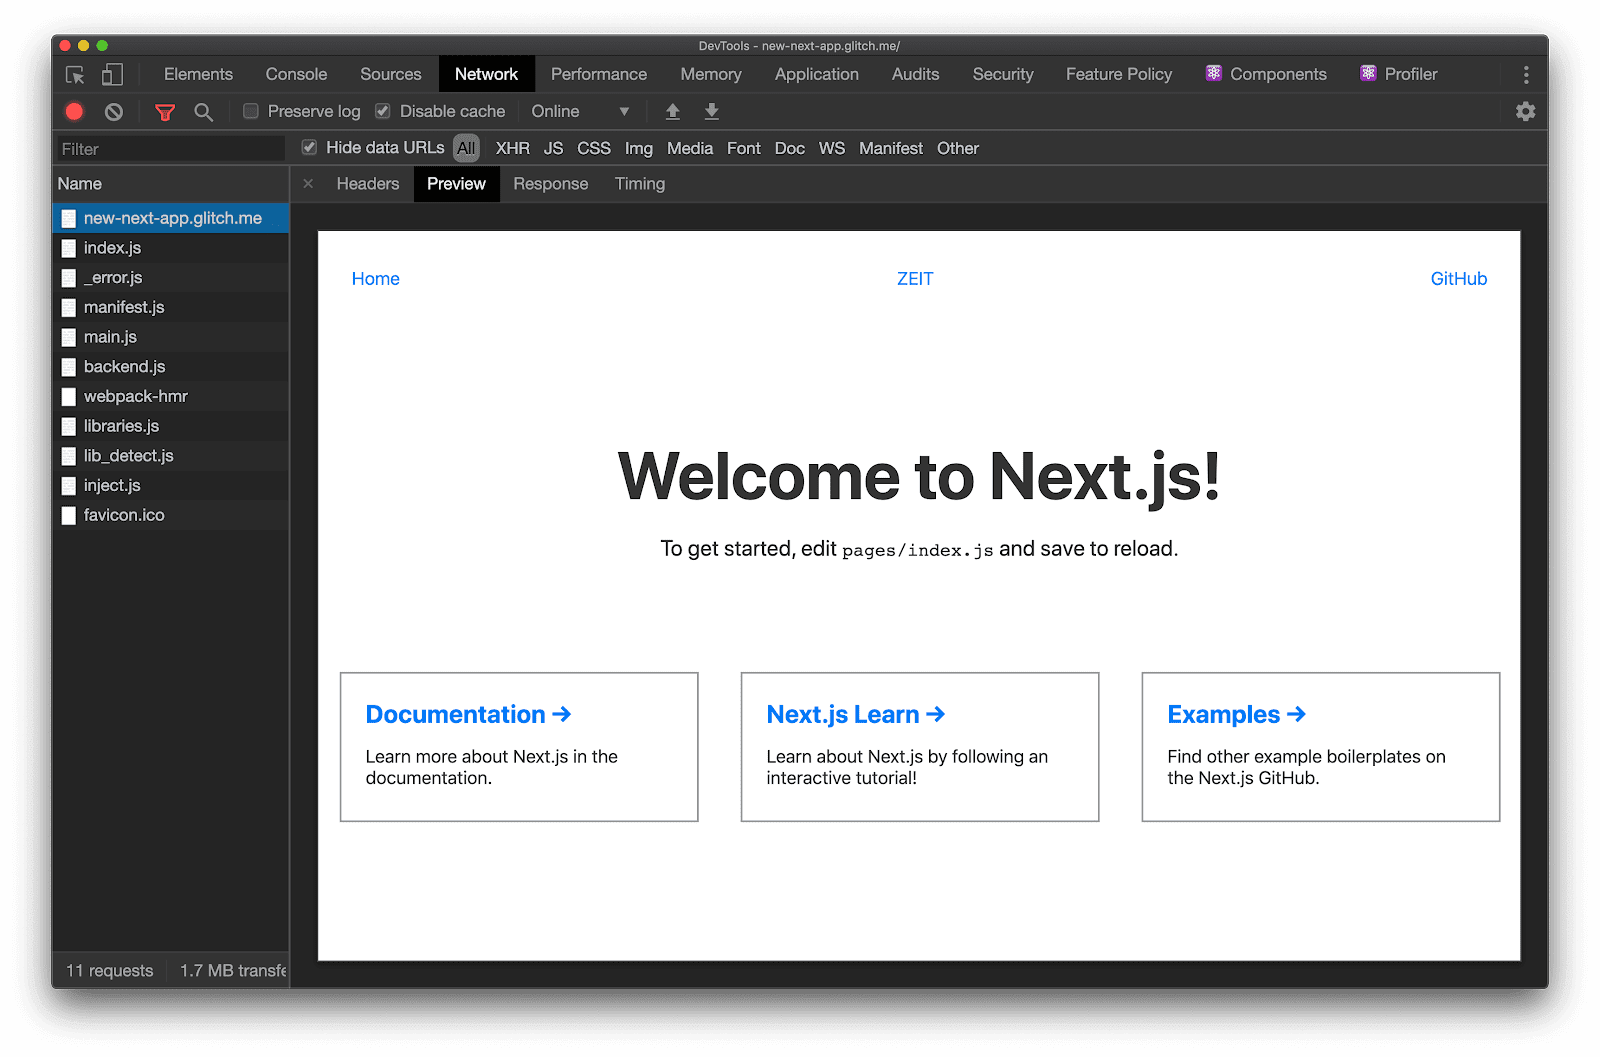 Tab Preview pada panel Network menunjukkan bahwa Next.js menampilkan HTML yang lengkap secara visual saat ada halaman yang diminta.